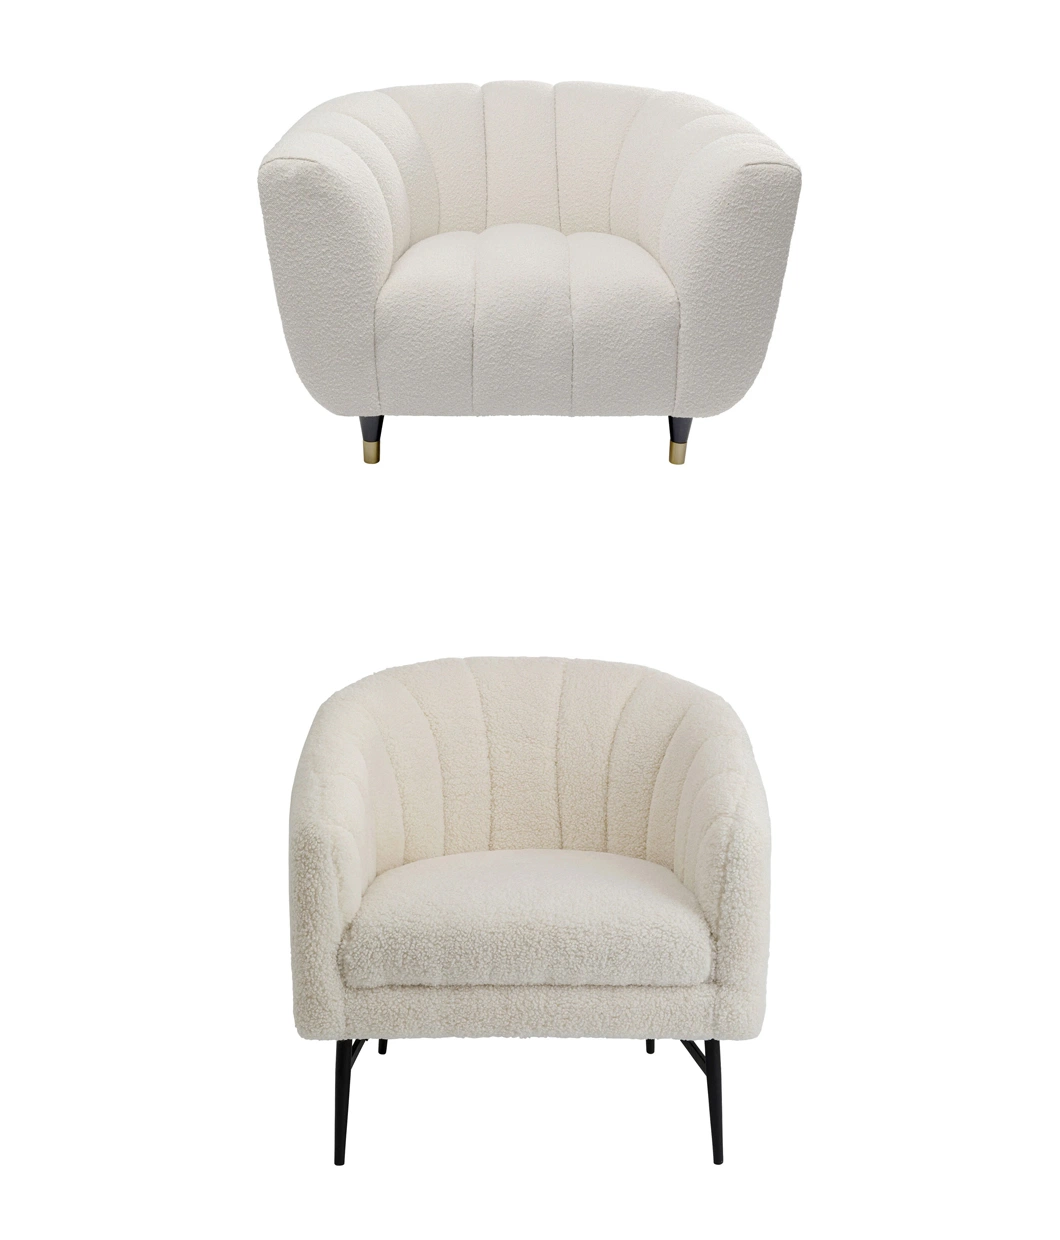 Modern Minimalist Single Velvet Sofa Bedroom Living Room Lounge Chair